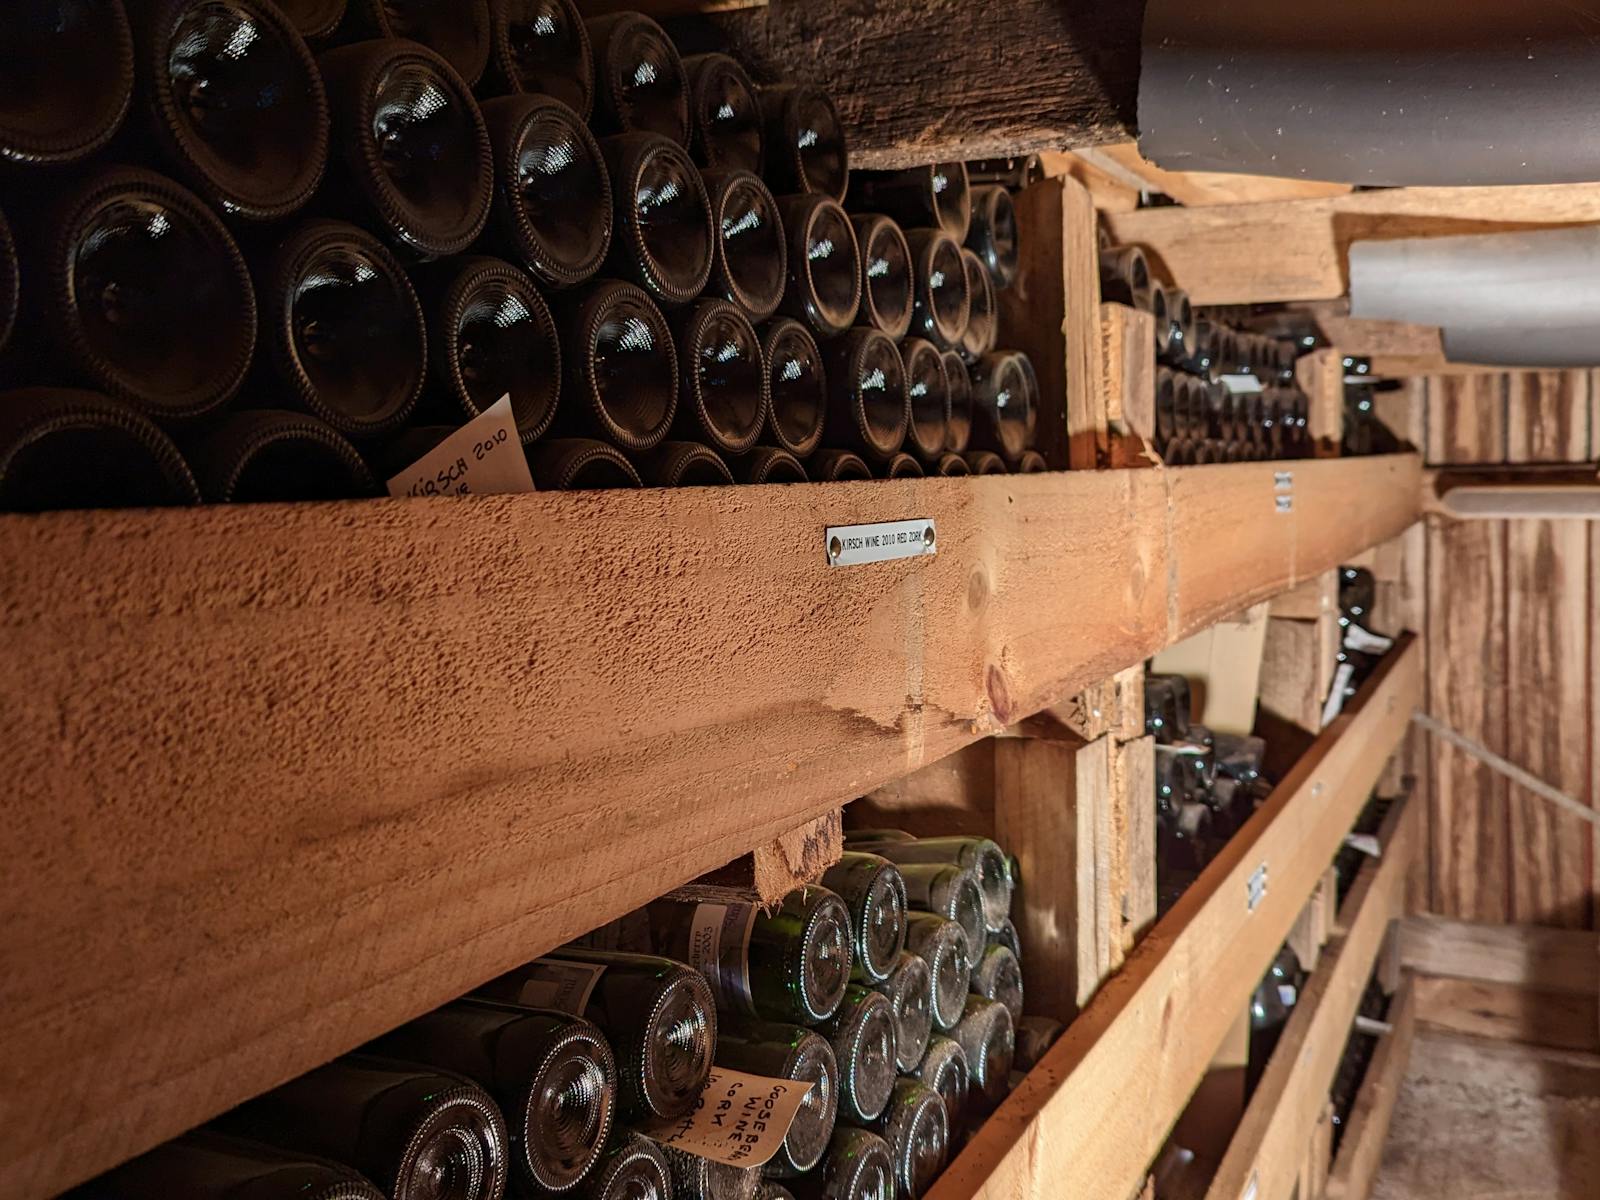 dusty bottles of wine on wooden shelving in cellar